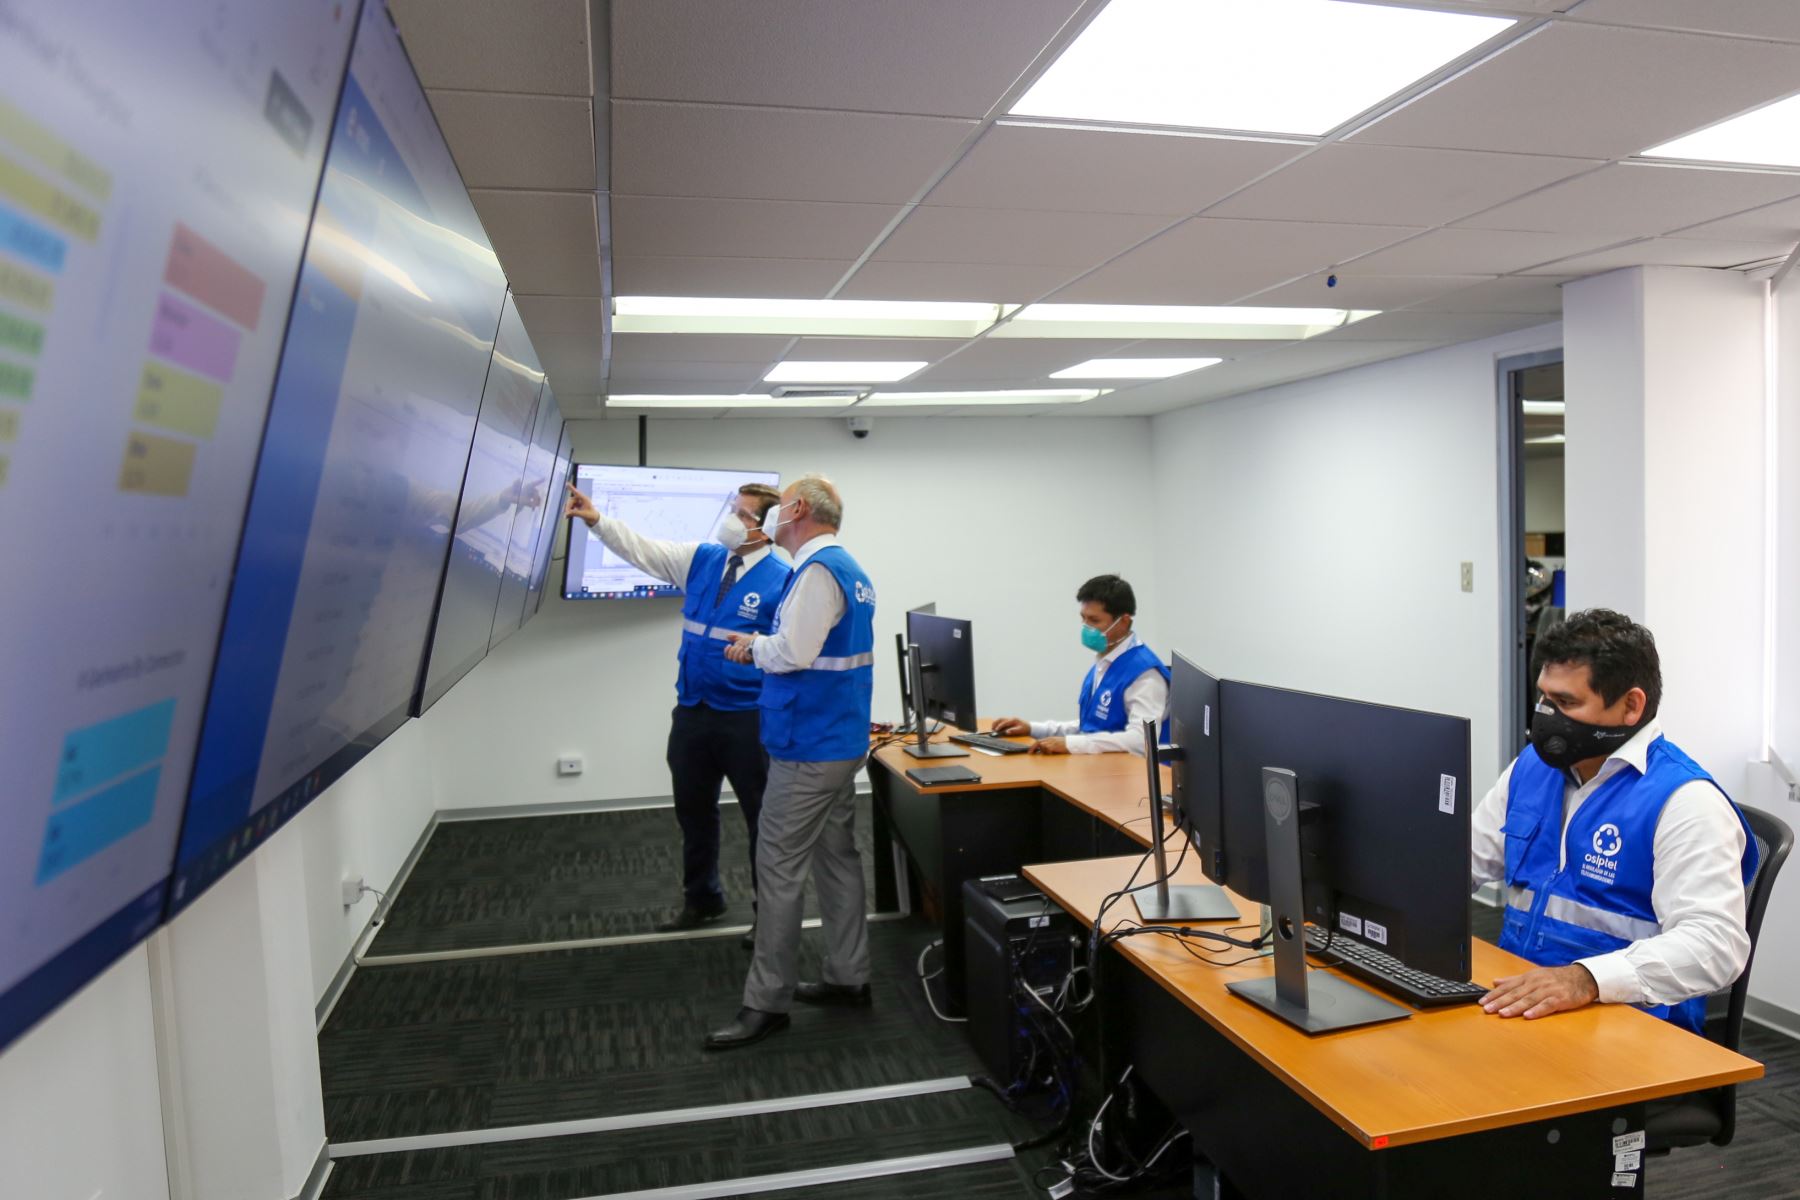 Centro de monitoreo de redes, con equipamiento y tecnología moderna. Foto: cortesía Osiptel.